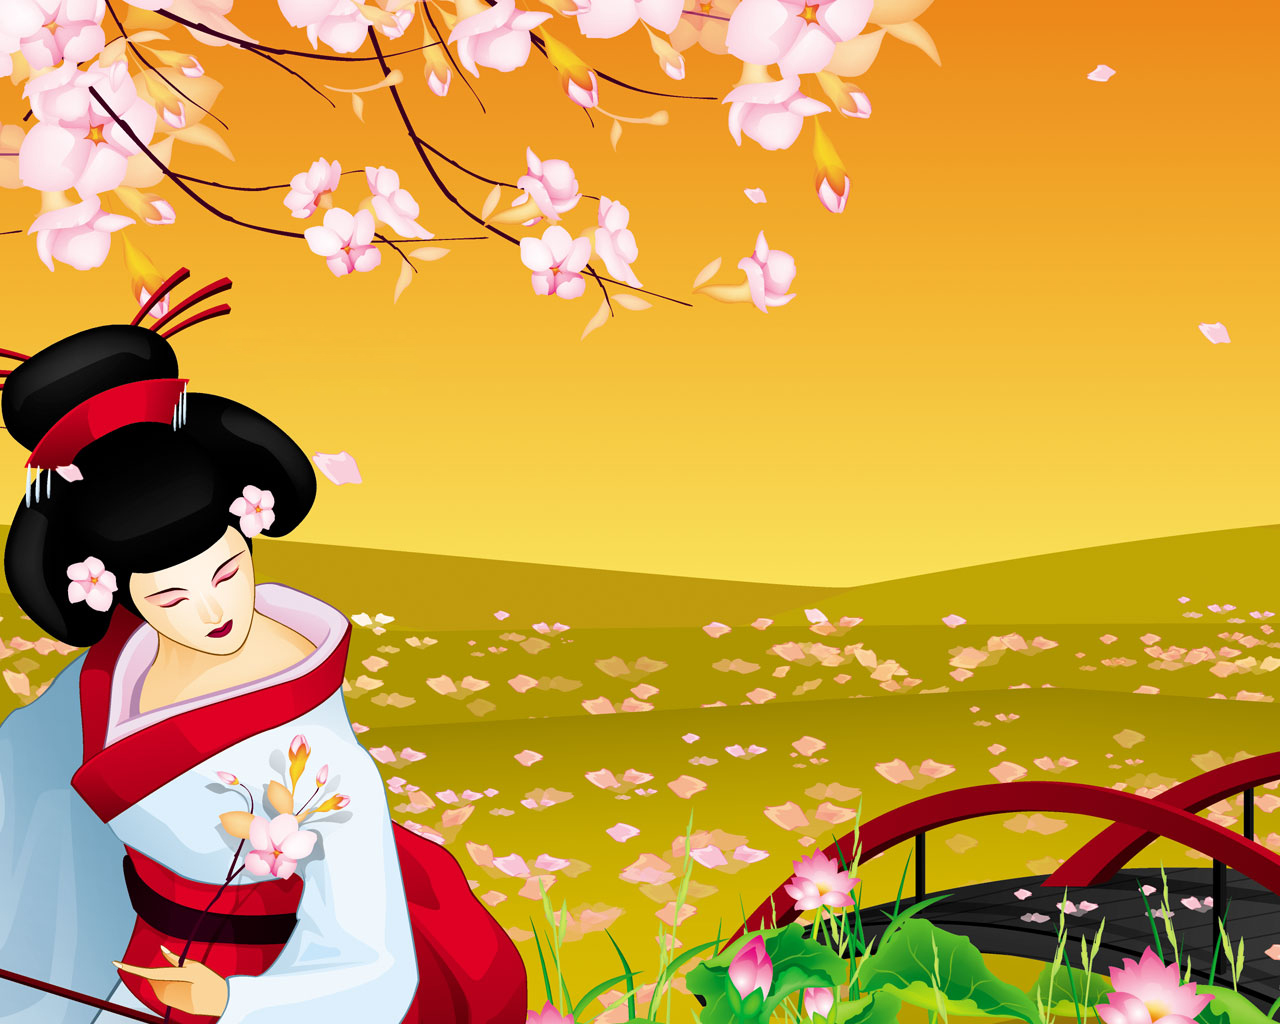 아시아 테마 벽지,만화,삽화,봄,식물,꽃